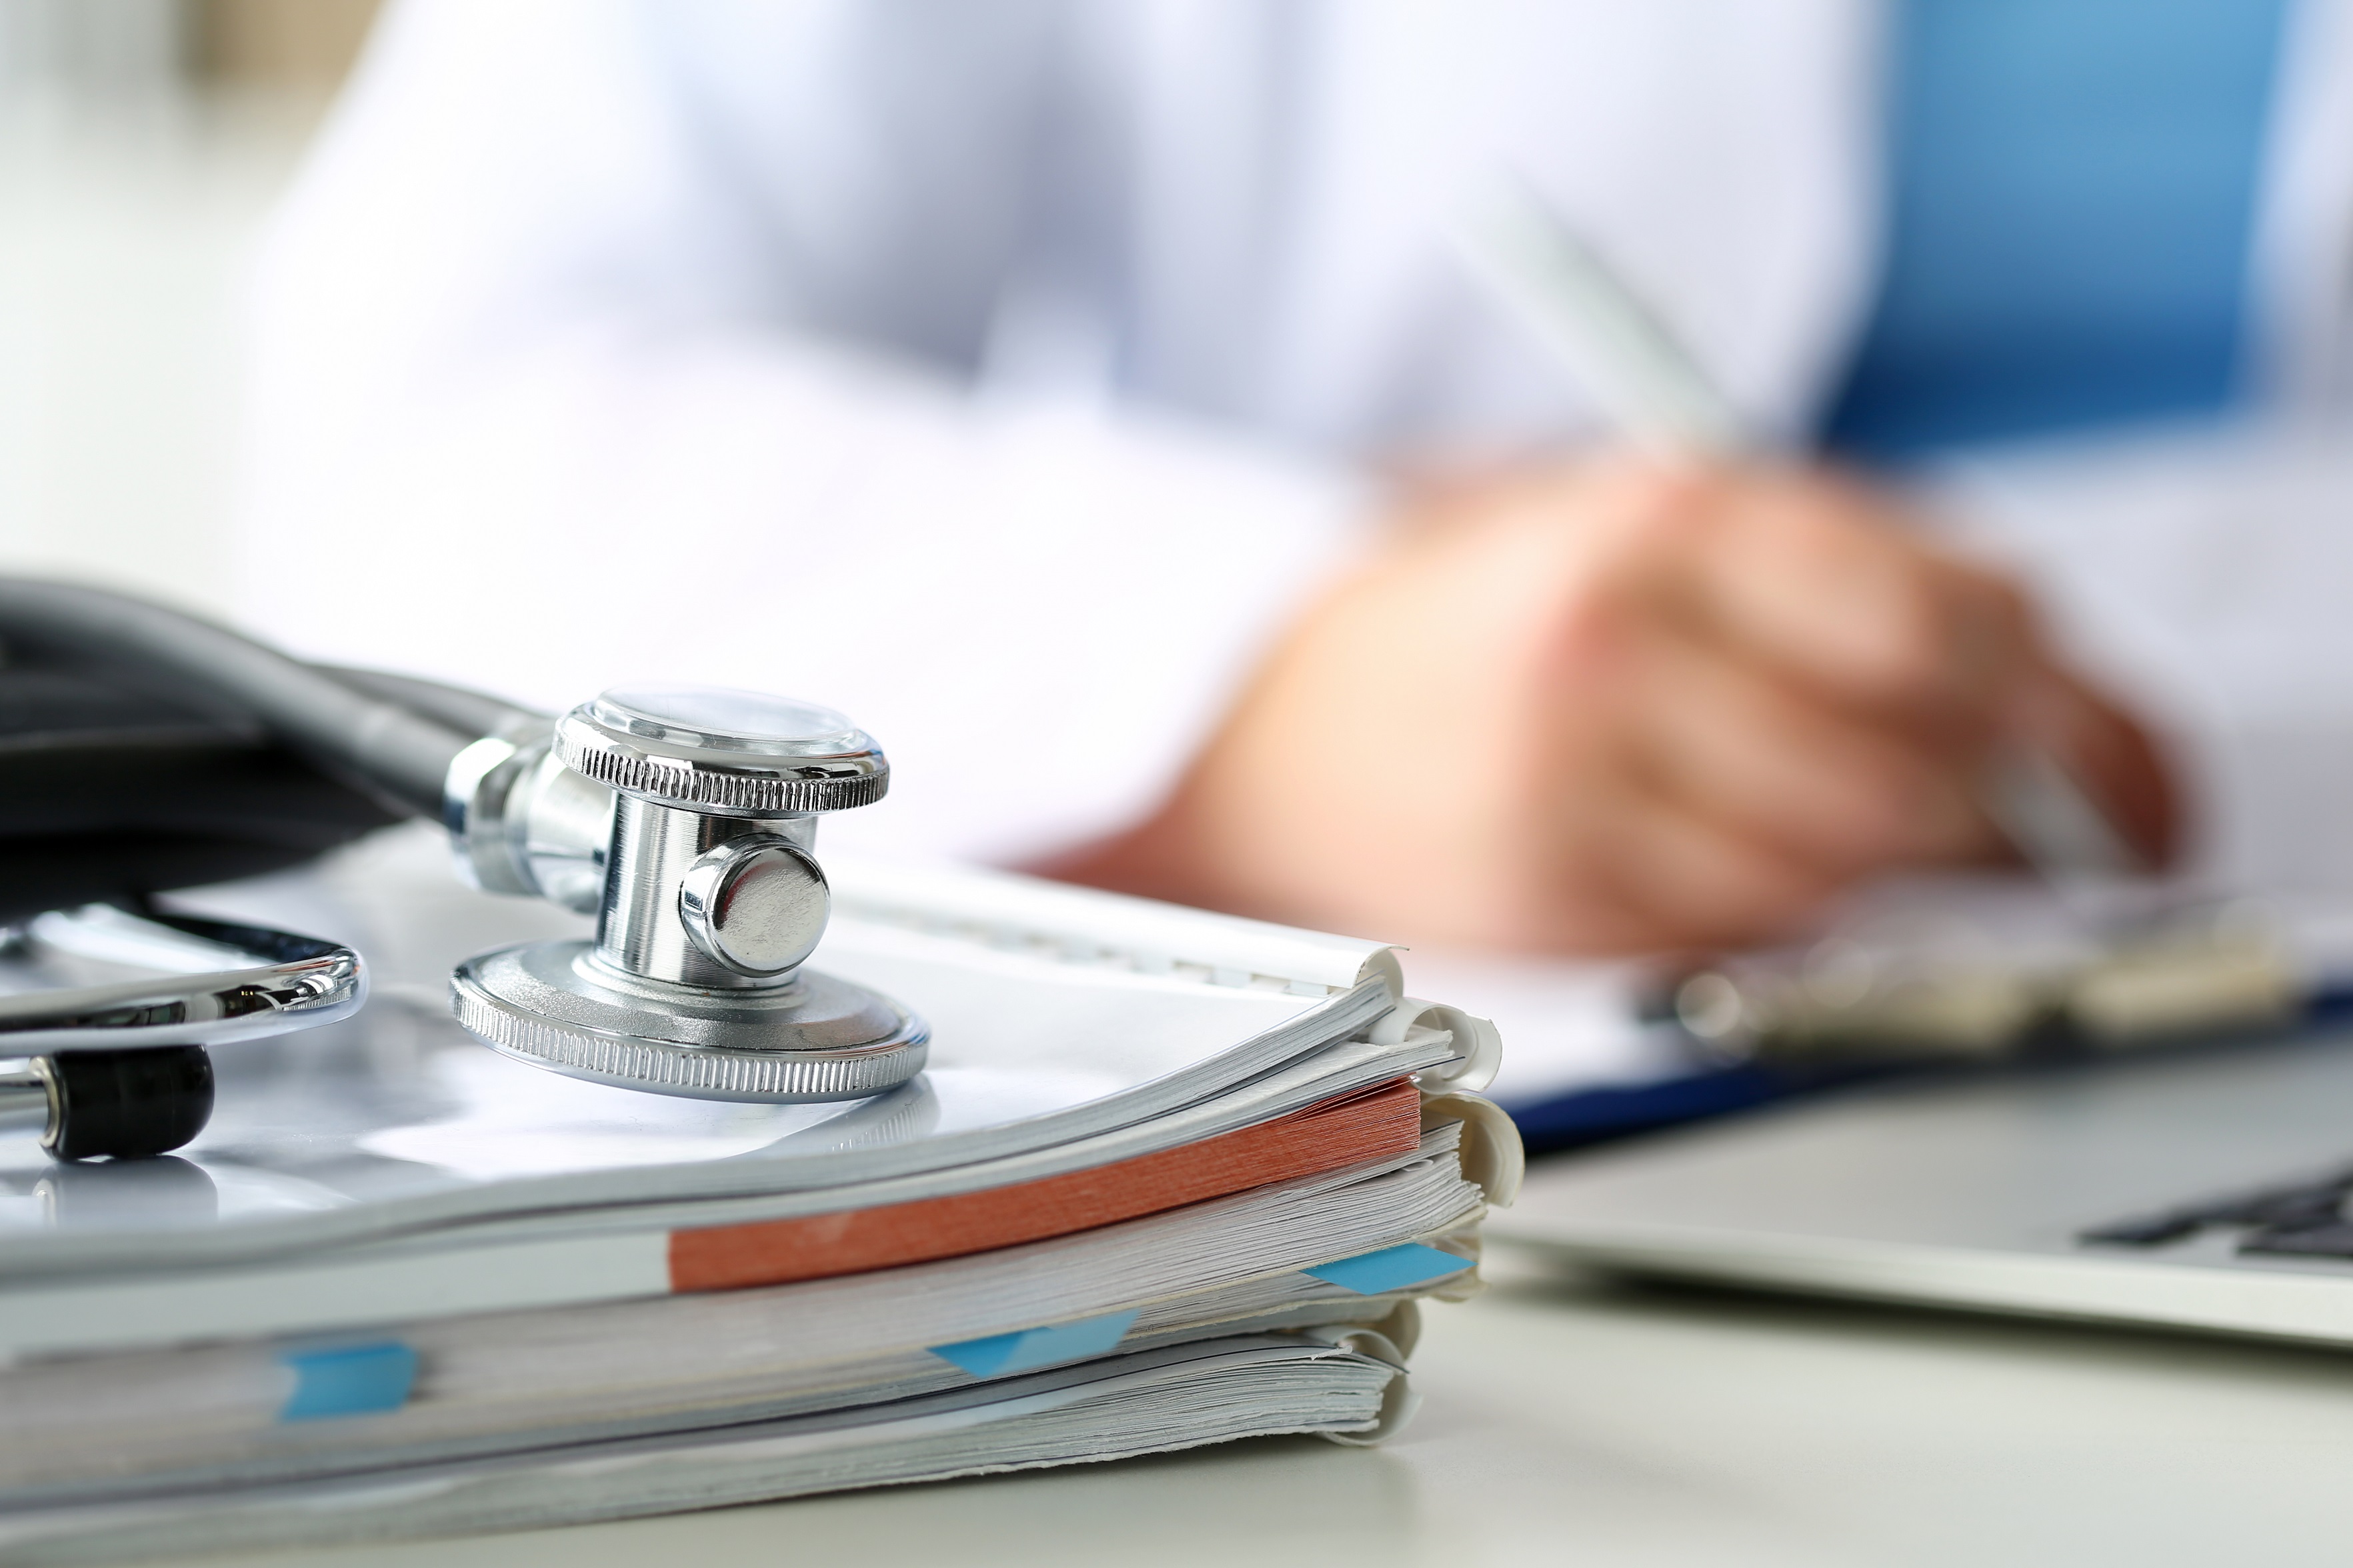 Tête de stéthoscope posée sur des formulaires médicaux sur une planchette à pince, en gros plan, tandis qu'un médecin travaille à l'arrière-plan.